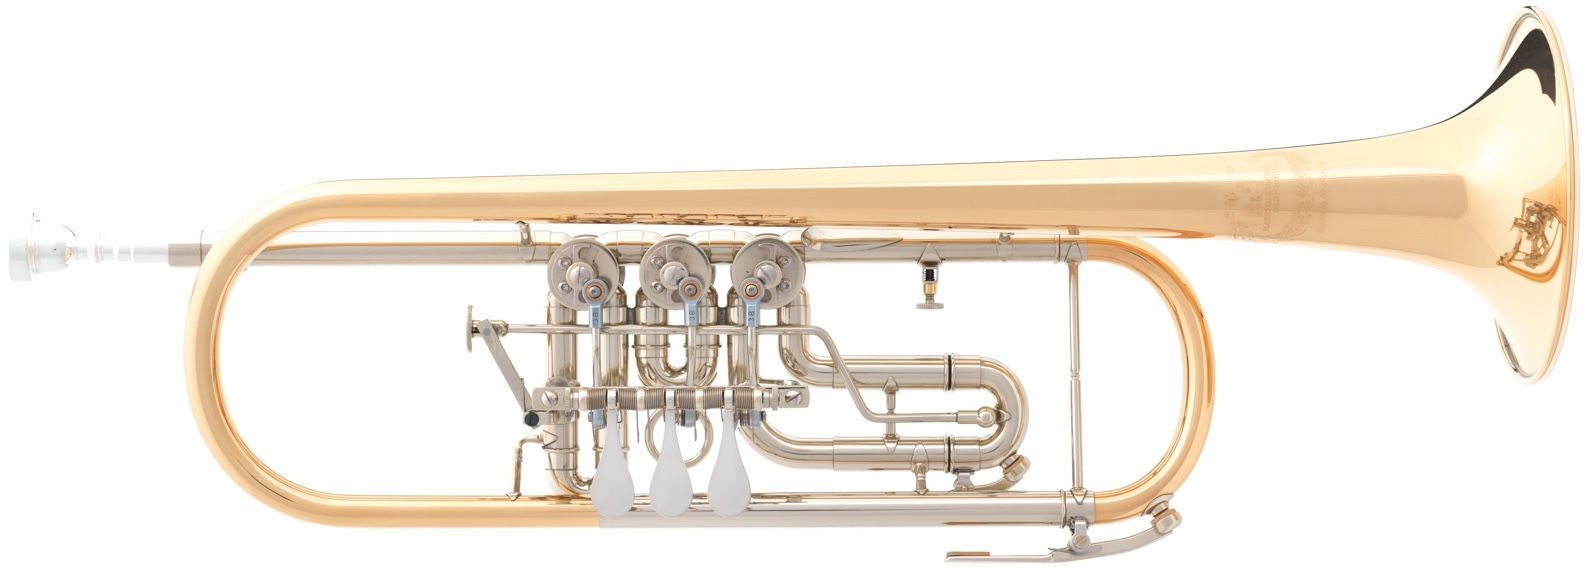 B S 3005 3 GT 1 0B Konzerttrompete, Bohrung 11,00mm , incl.Etui u. Pflegeset  - Onlineshop Musikhaus Markstein